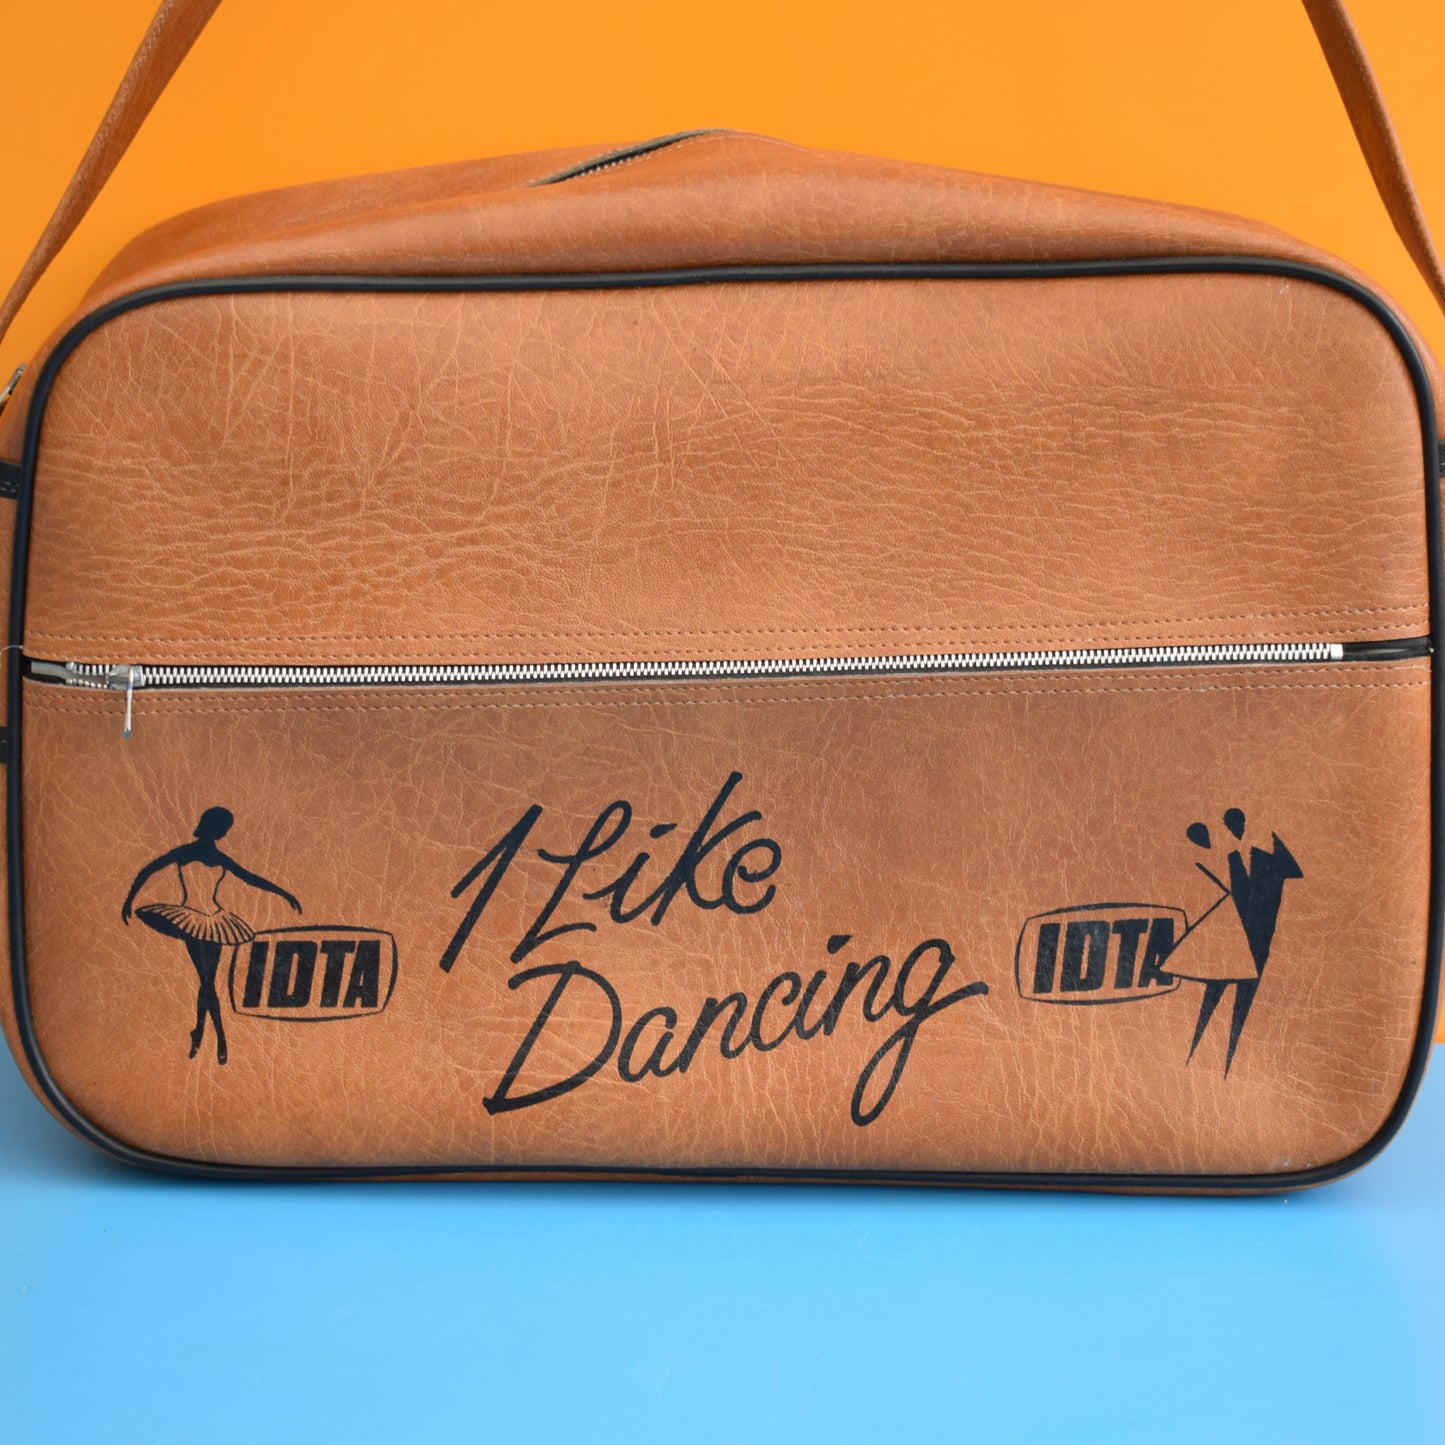 Vintage 1970s Dance / Sports Bag - Brown